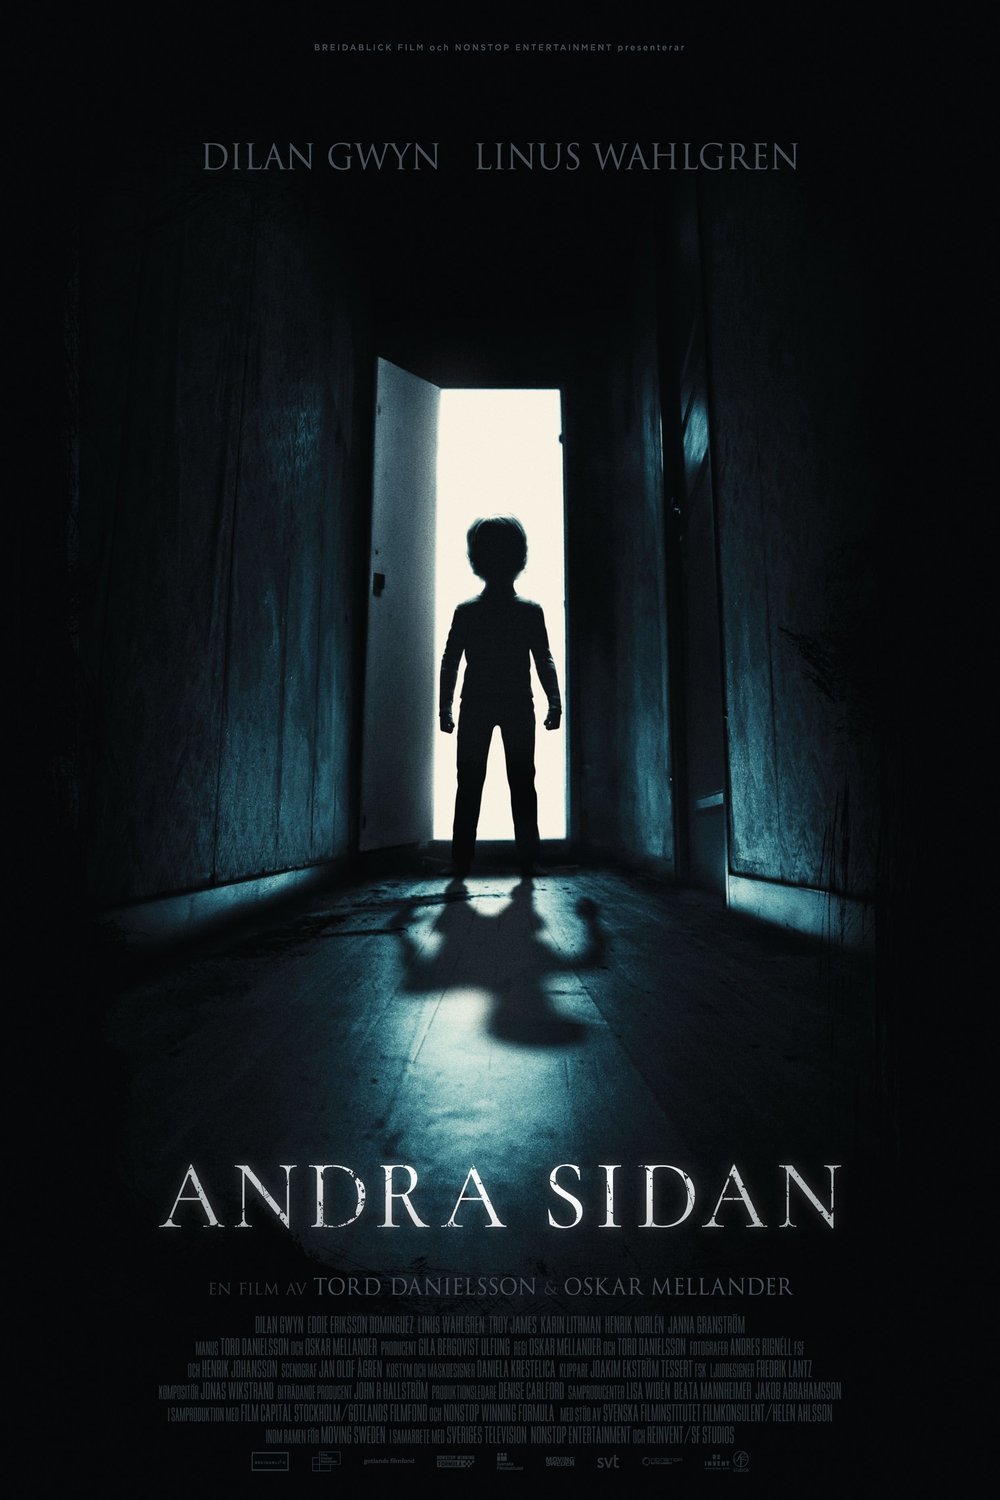 L'affiche originale du film Andra sidan en suédois